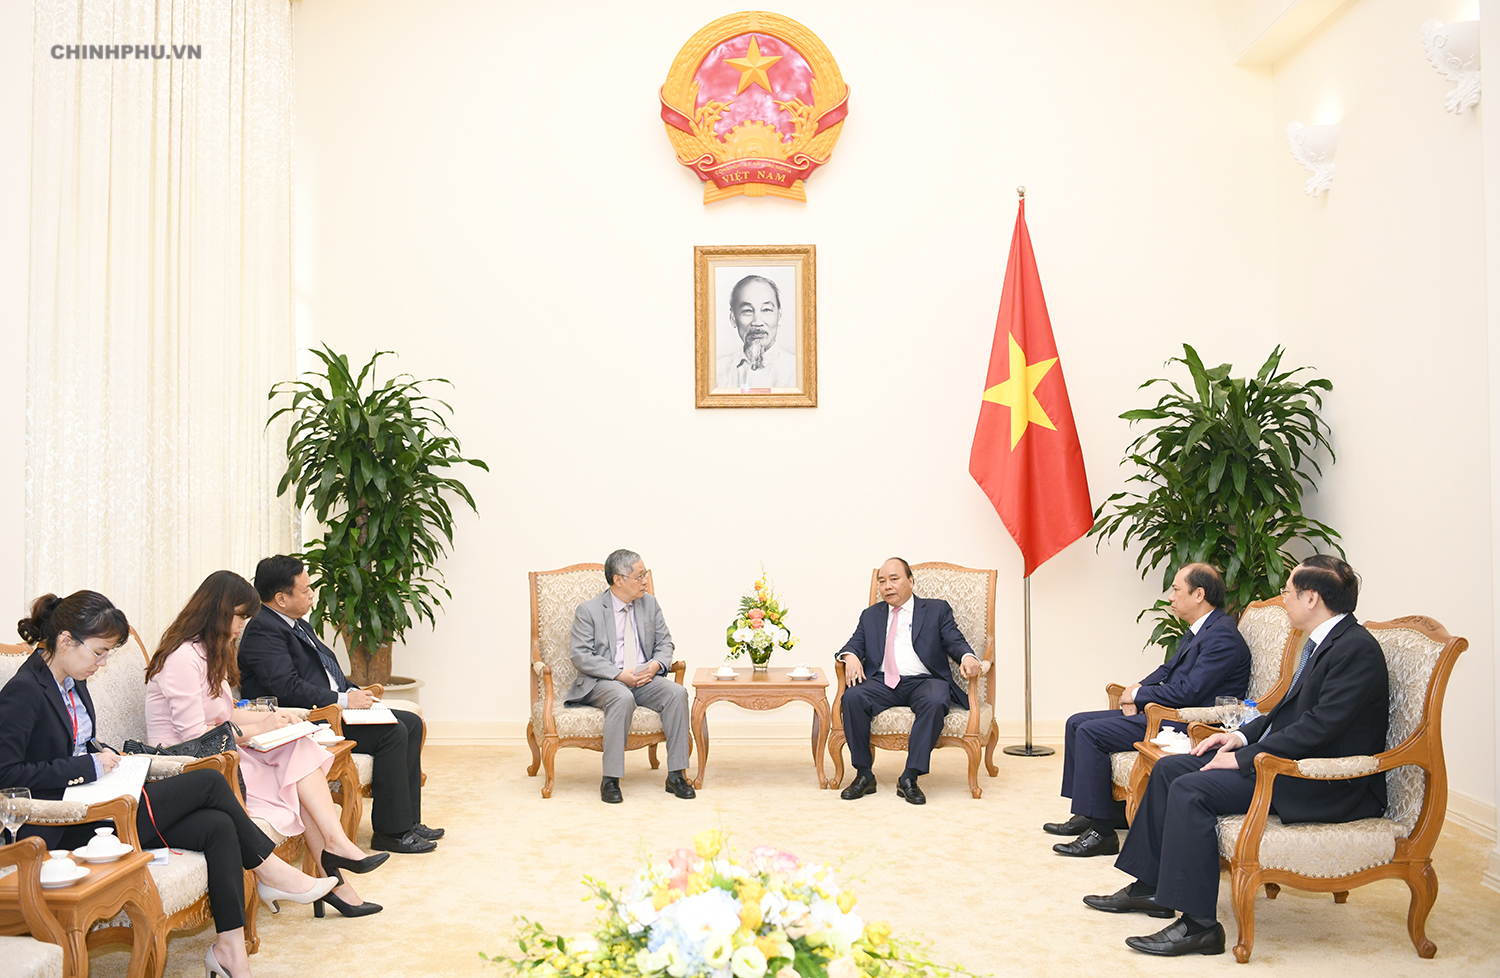 Thủ tướng: Với sự lãnh đạo tài tình của Thủ tướng, Việt Nam đang phát triển mạnh mẽ và tiến tới một tương lai tươi sáng.